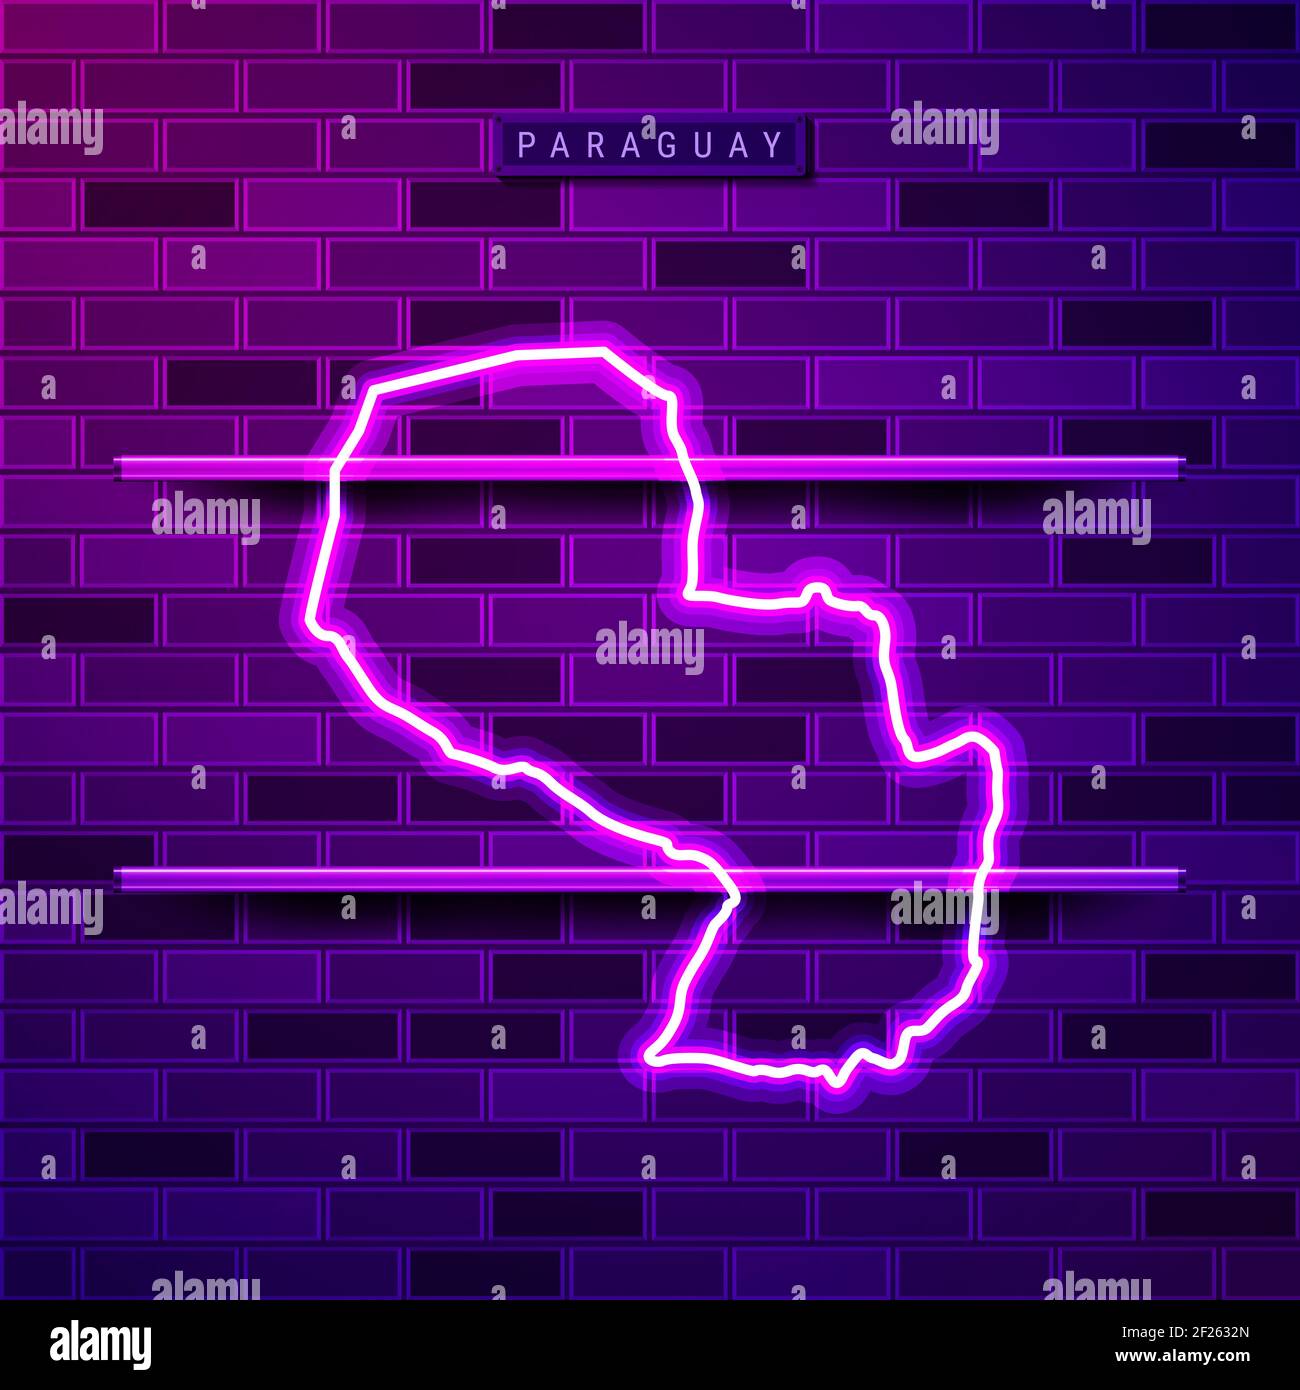 Paraguay mapa lámpara de neón brillante signo. Ilustración realista. Placa  del nombre del país. Pared de ladrillo púrpura, brillo violeta, soportes  metálicos Fotografía de stock - Alamy